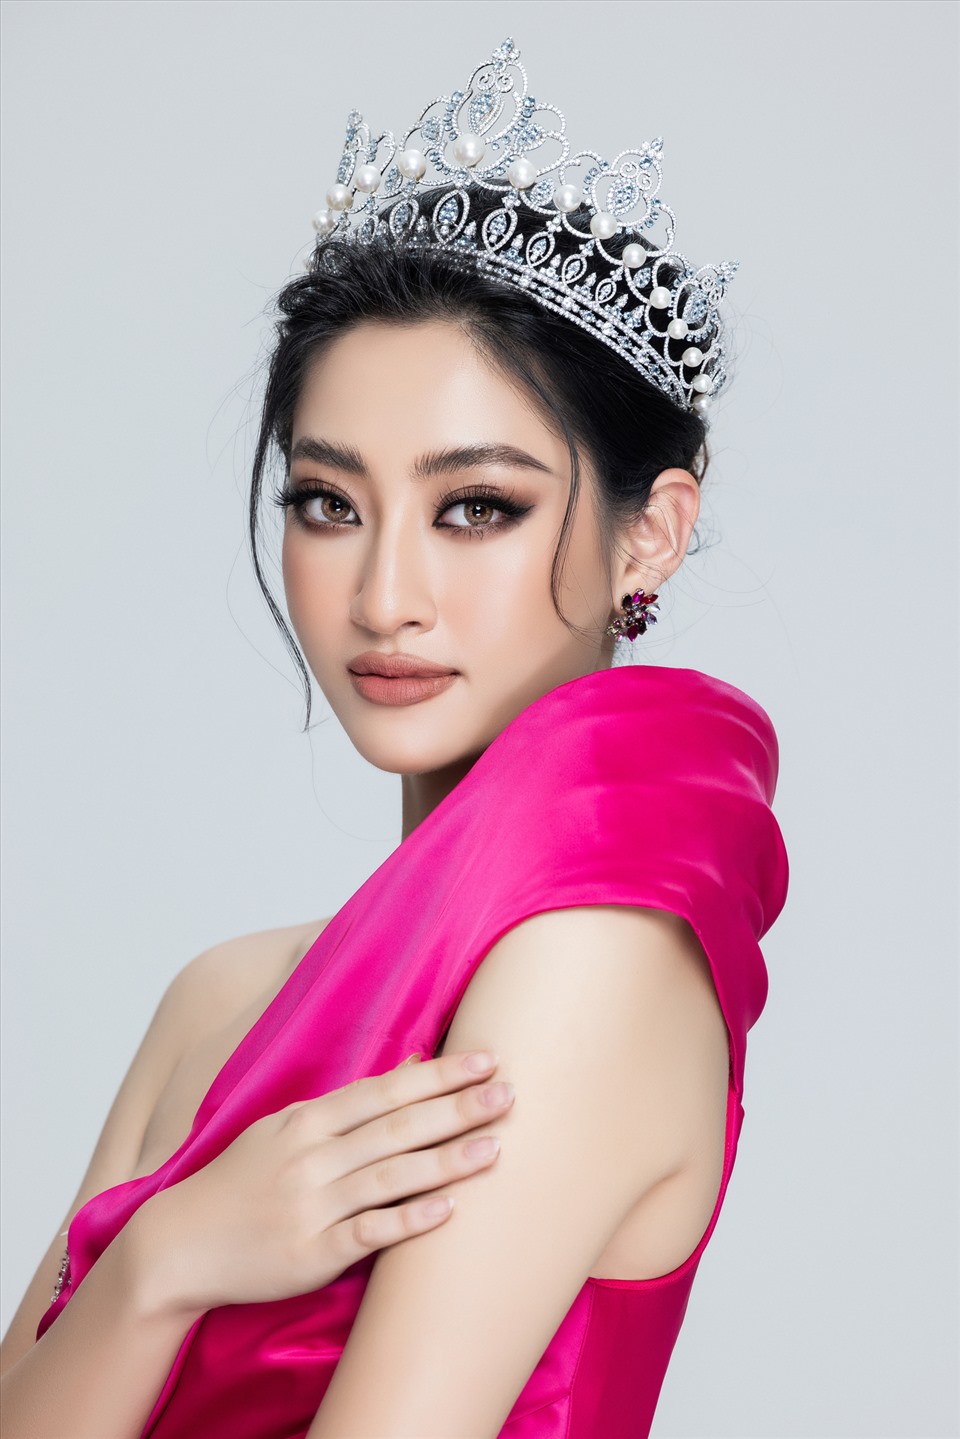 Sau 2 năm, đương kim Miss World Vietnam 2019 đã cho công chúng thấy hình ảnh một hoa hậu chín muồi về nhan sắc và thăng hoa trong nghệ thuật. Ảnh: Sen Vàng.